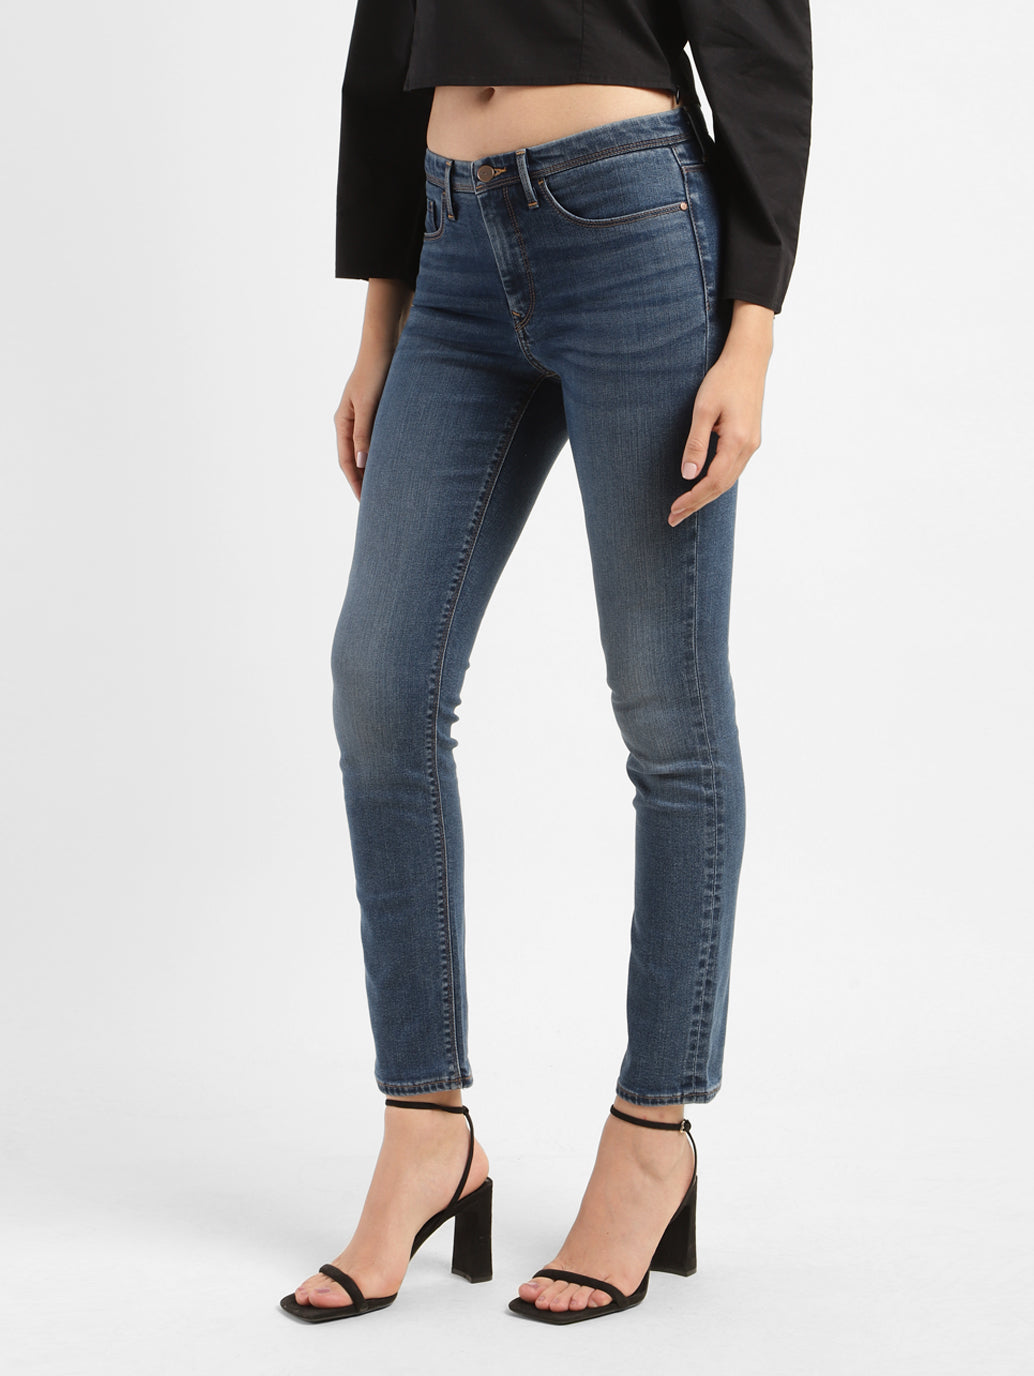 Women's 312 Slim Fit Jeans